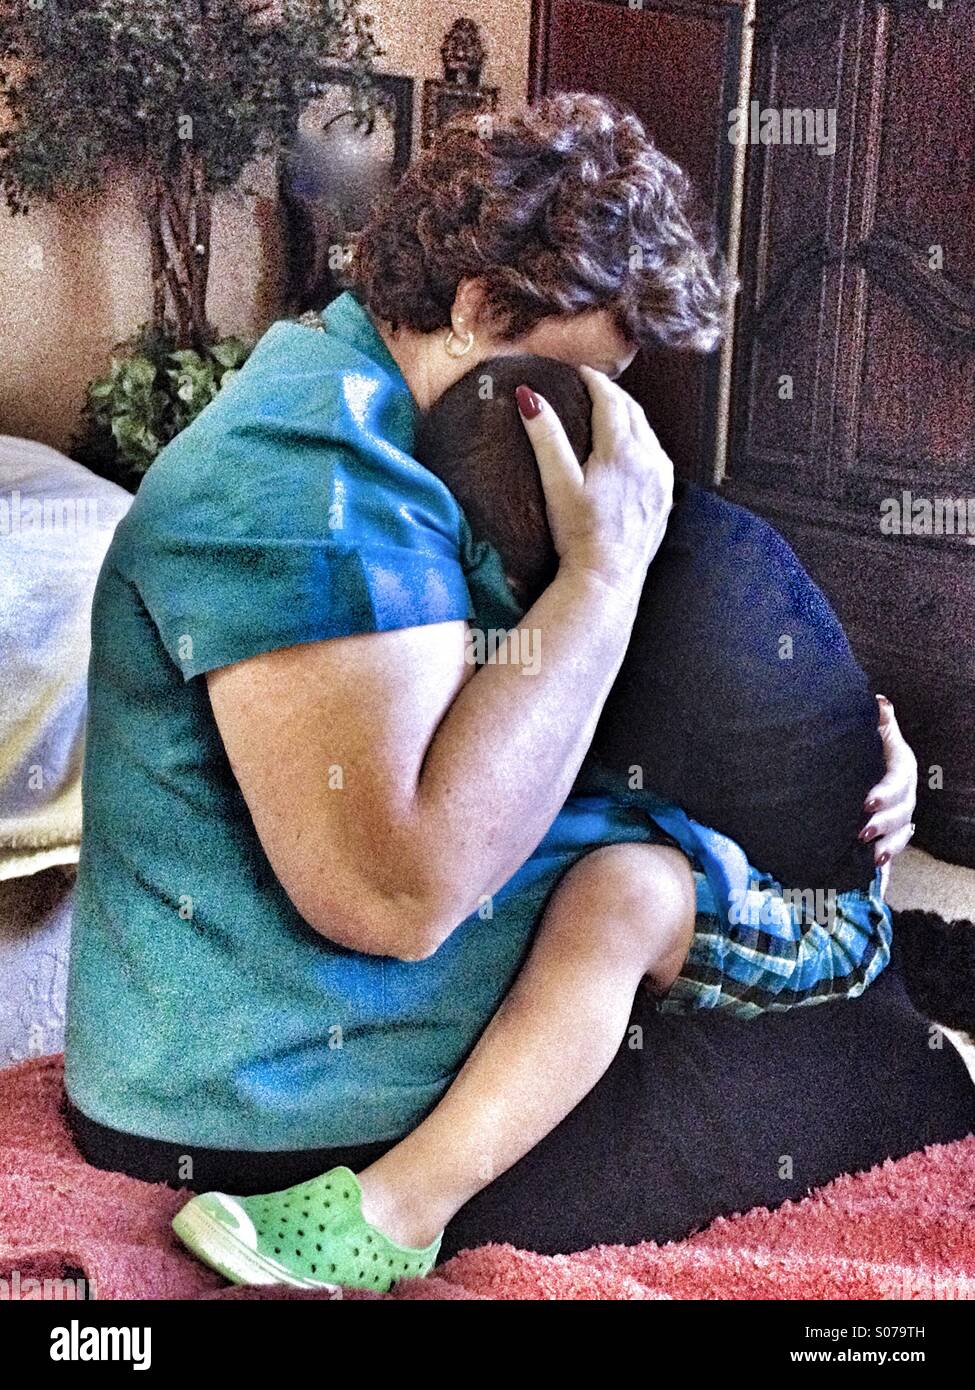 Tocar shot de una abuela holding, abrazos, y consolando a un niño pequeño. Foto de stock